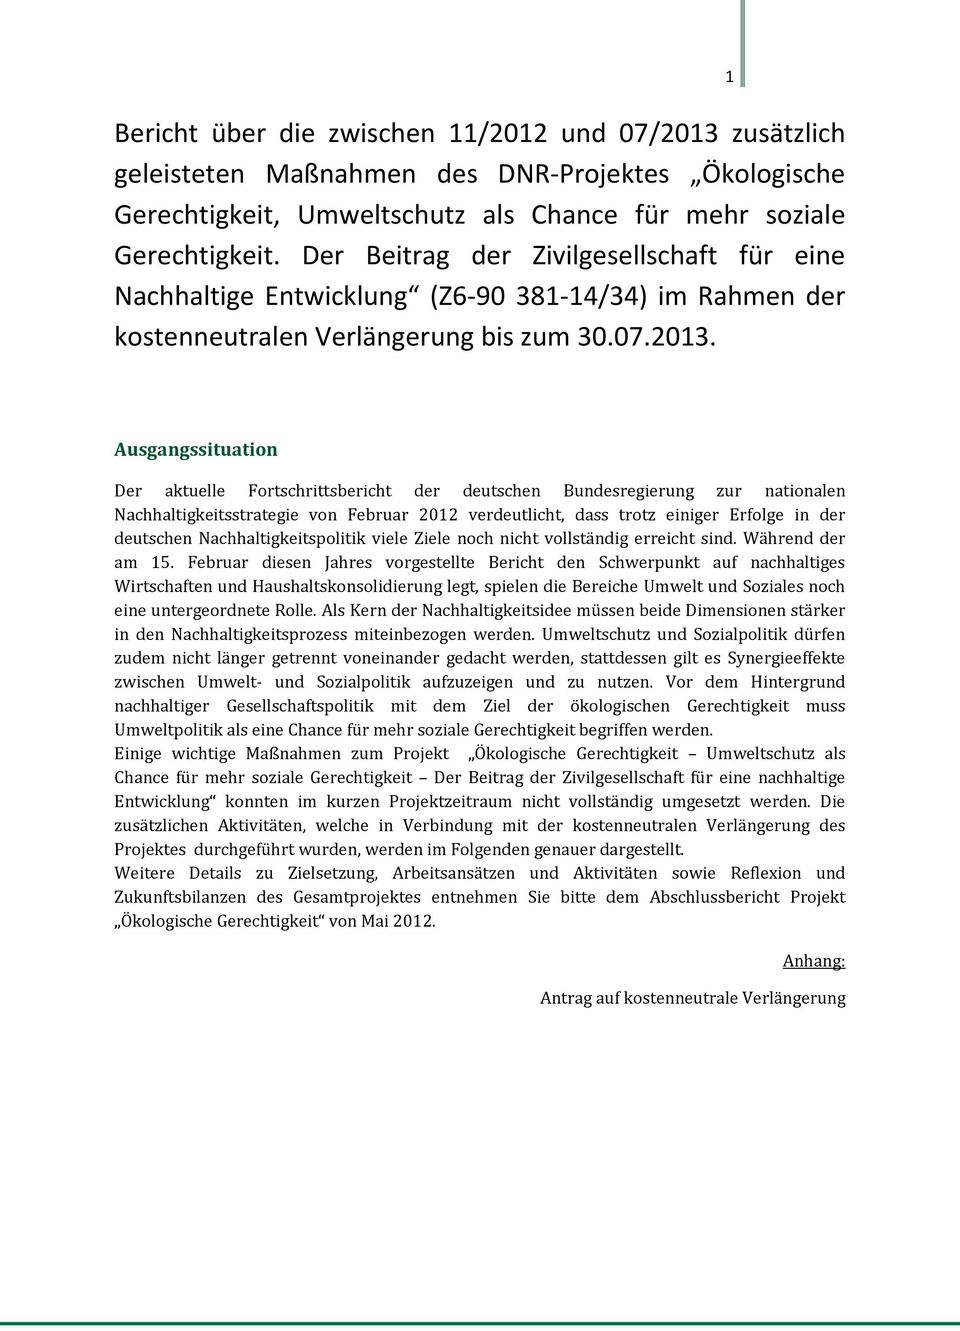 1 Ausgangssituation Der aktuelle Fortschrittsbericht der deutschen Bundesregierung zur nationalen Nachhaltigkeitsstrategie von Februar 2012 verdeutlicht, dass trotz einiger Erfolge in der deutschen